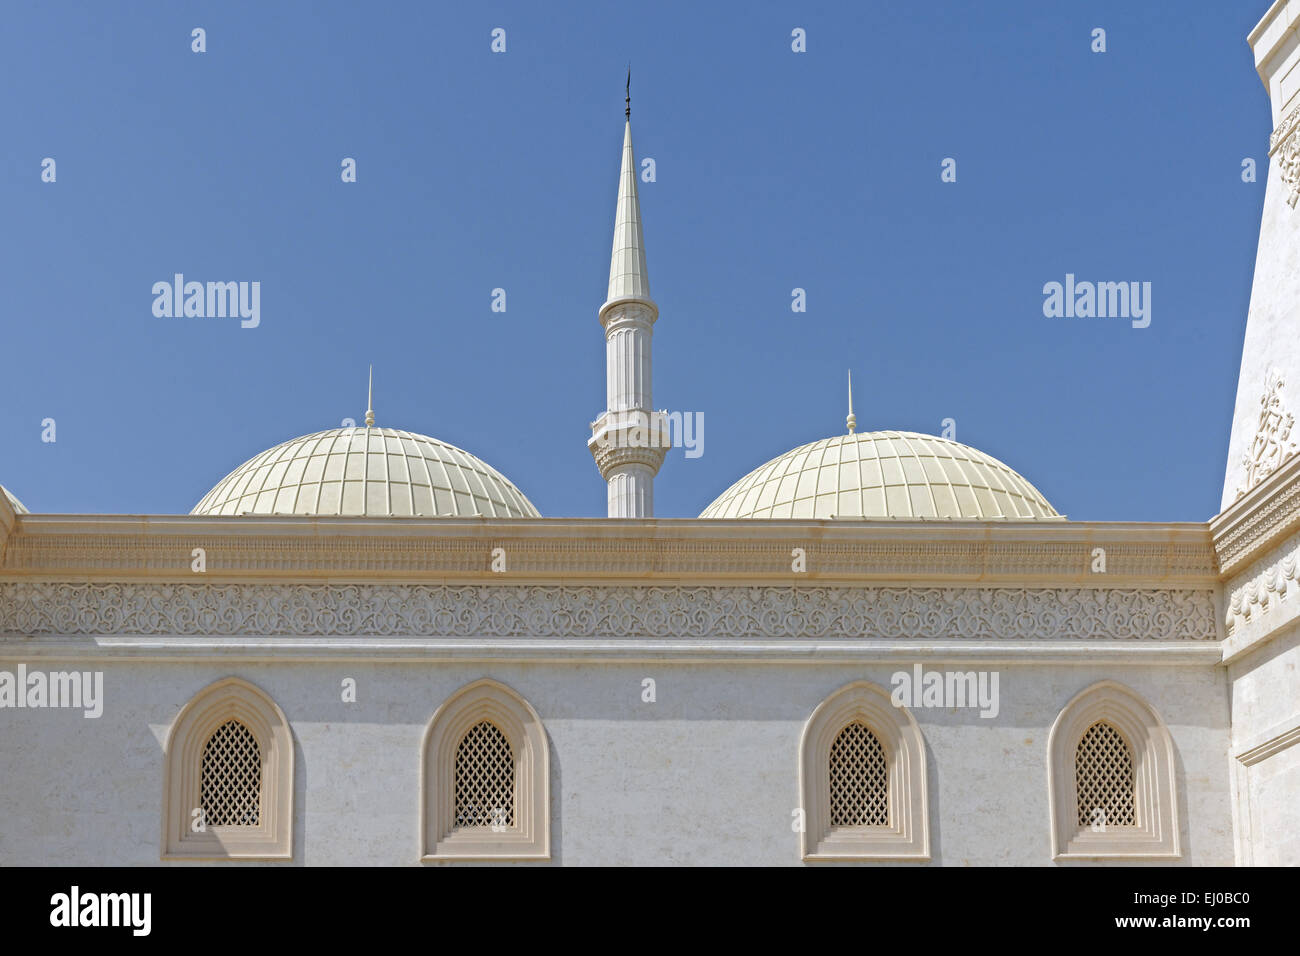 Mittlerer Osten, in der Nähe von East, Vereinigte Arabische Emirate, UAE, Fujairah, Faham Straße Moschee, neue, Architektur, Hochbau, chu Stockfoto